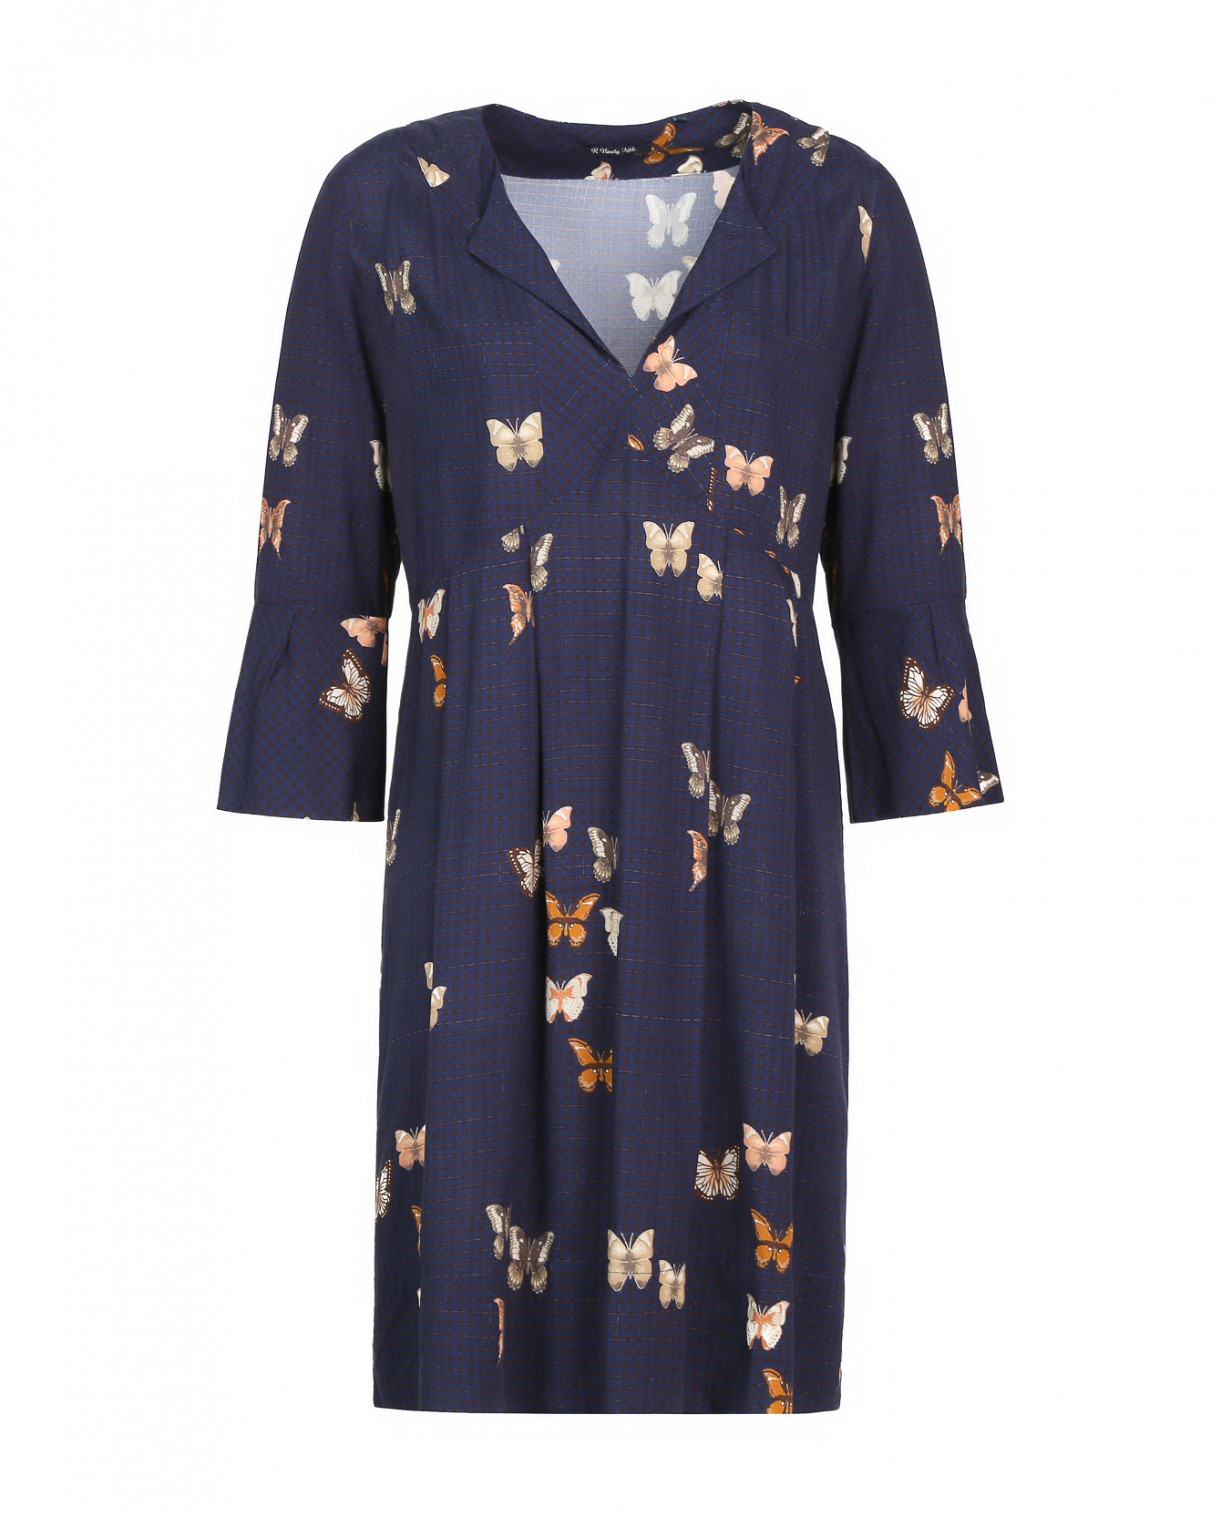 Платье с принтом и рукавами 3/4 R95TH  –  Общий вид  – Цвет:  Узор